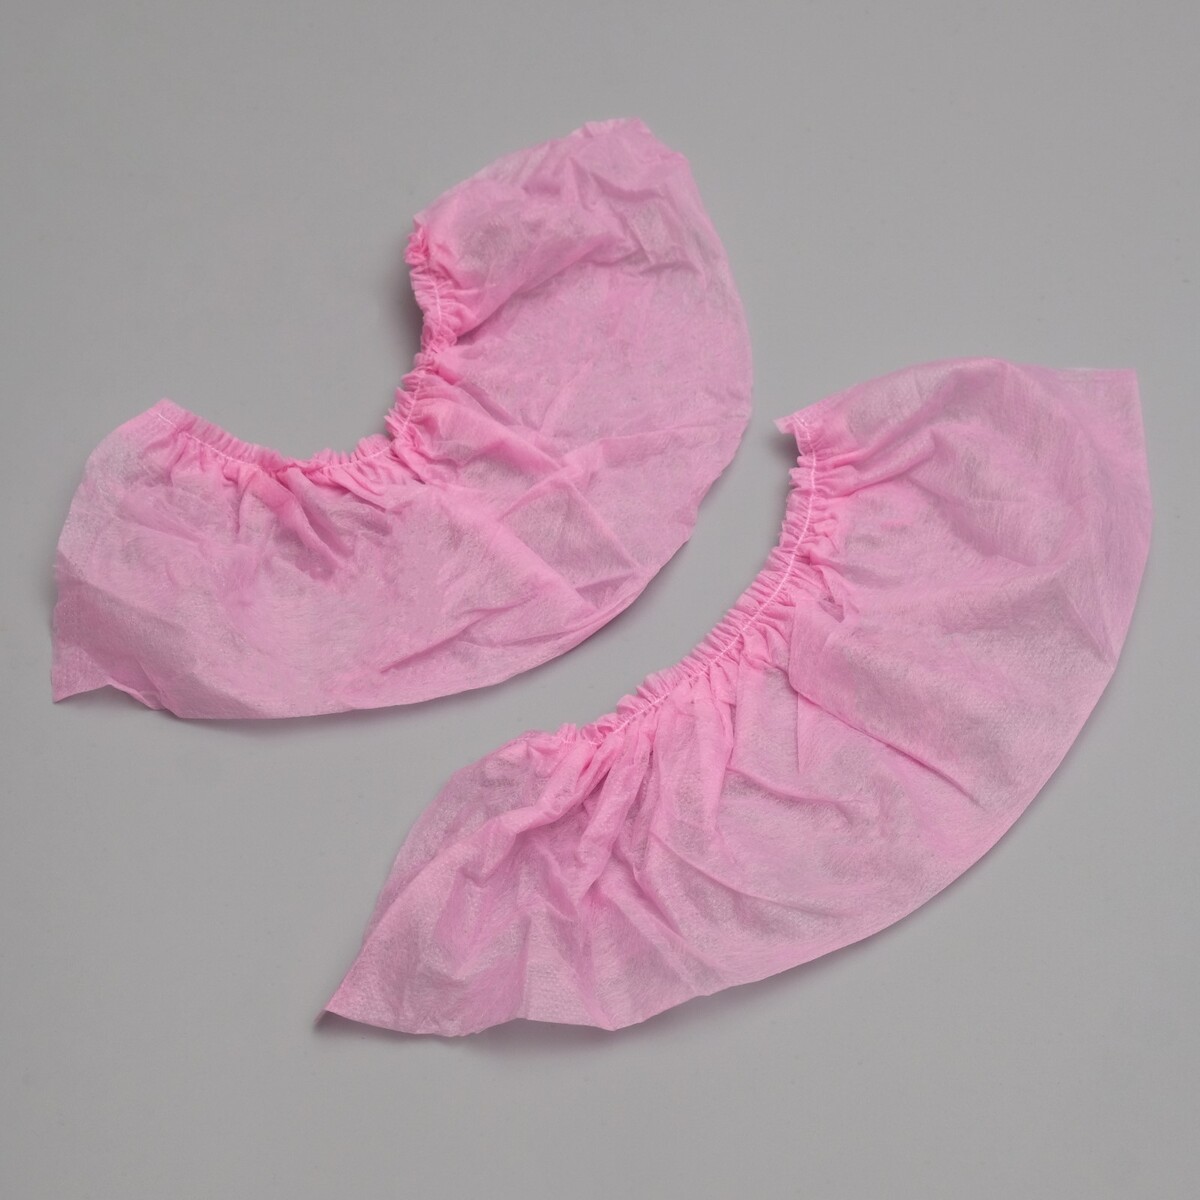 Носки одноразовые из нетканного материала для прокатной обуви, розовые. 43-44 рр No brand, цвет розовый 03311157 - фото 1